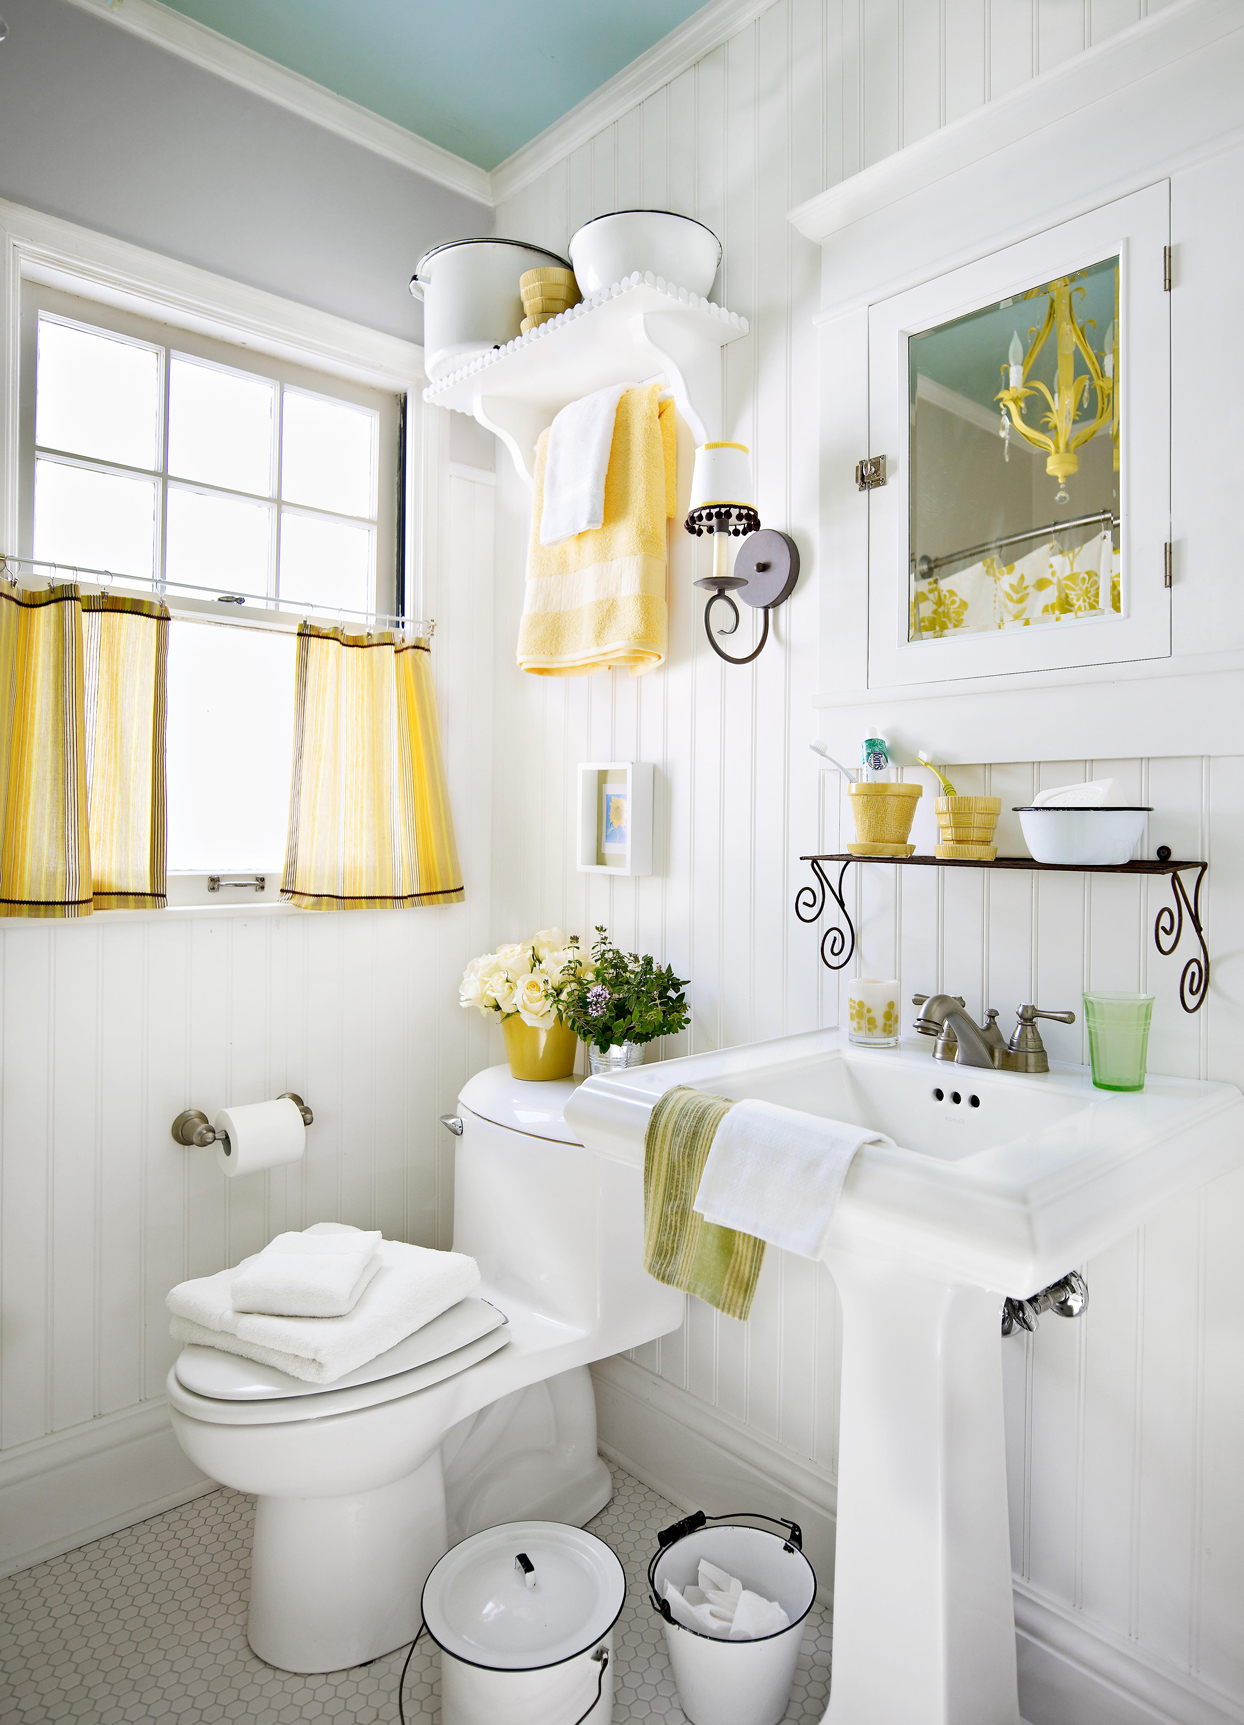 Желтые аксессуары в белой ванной комнате